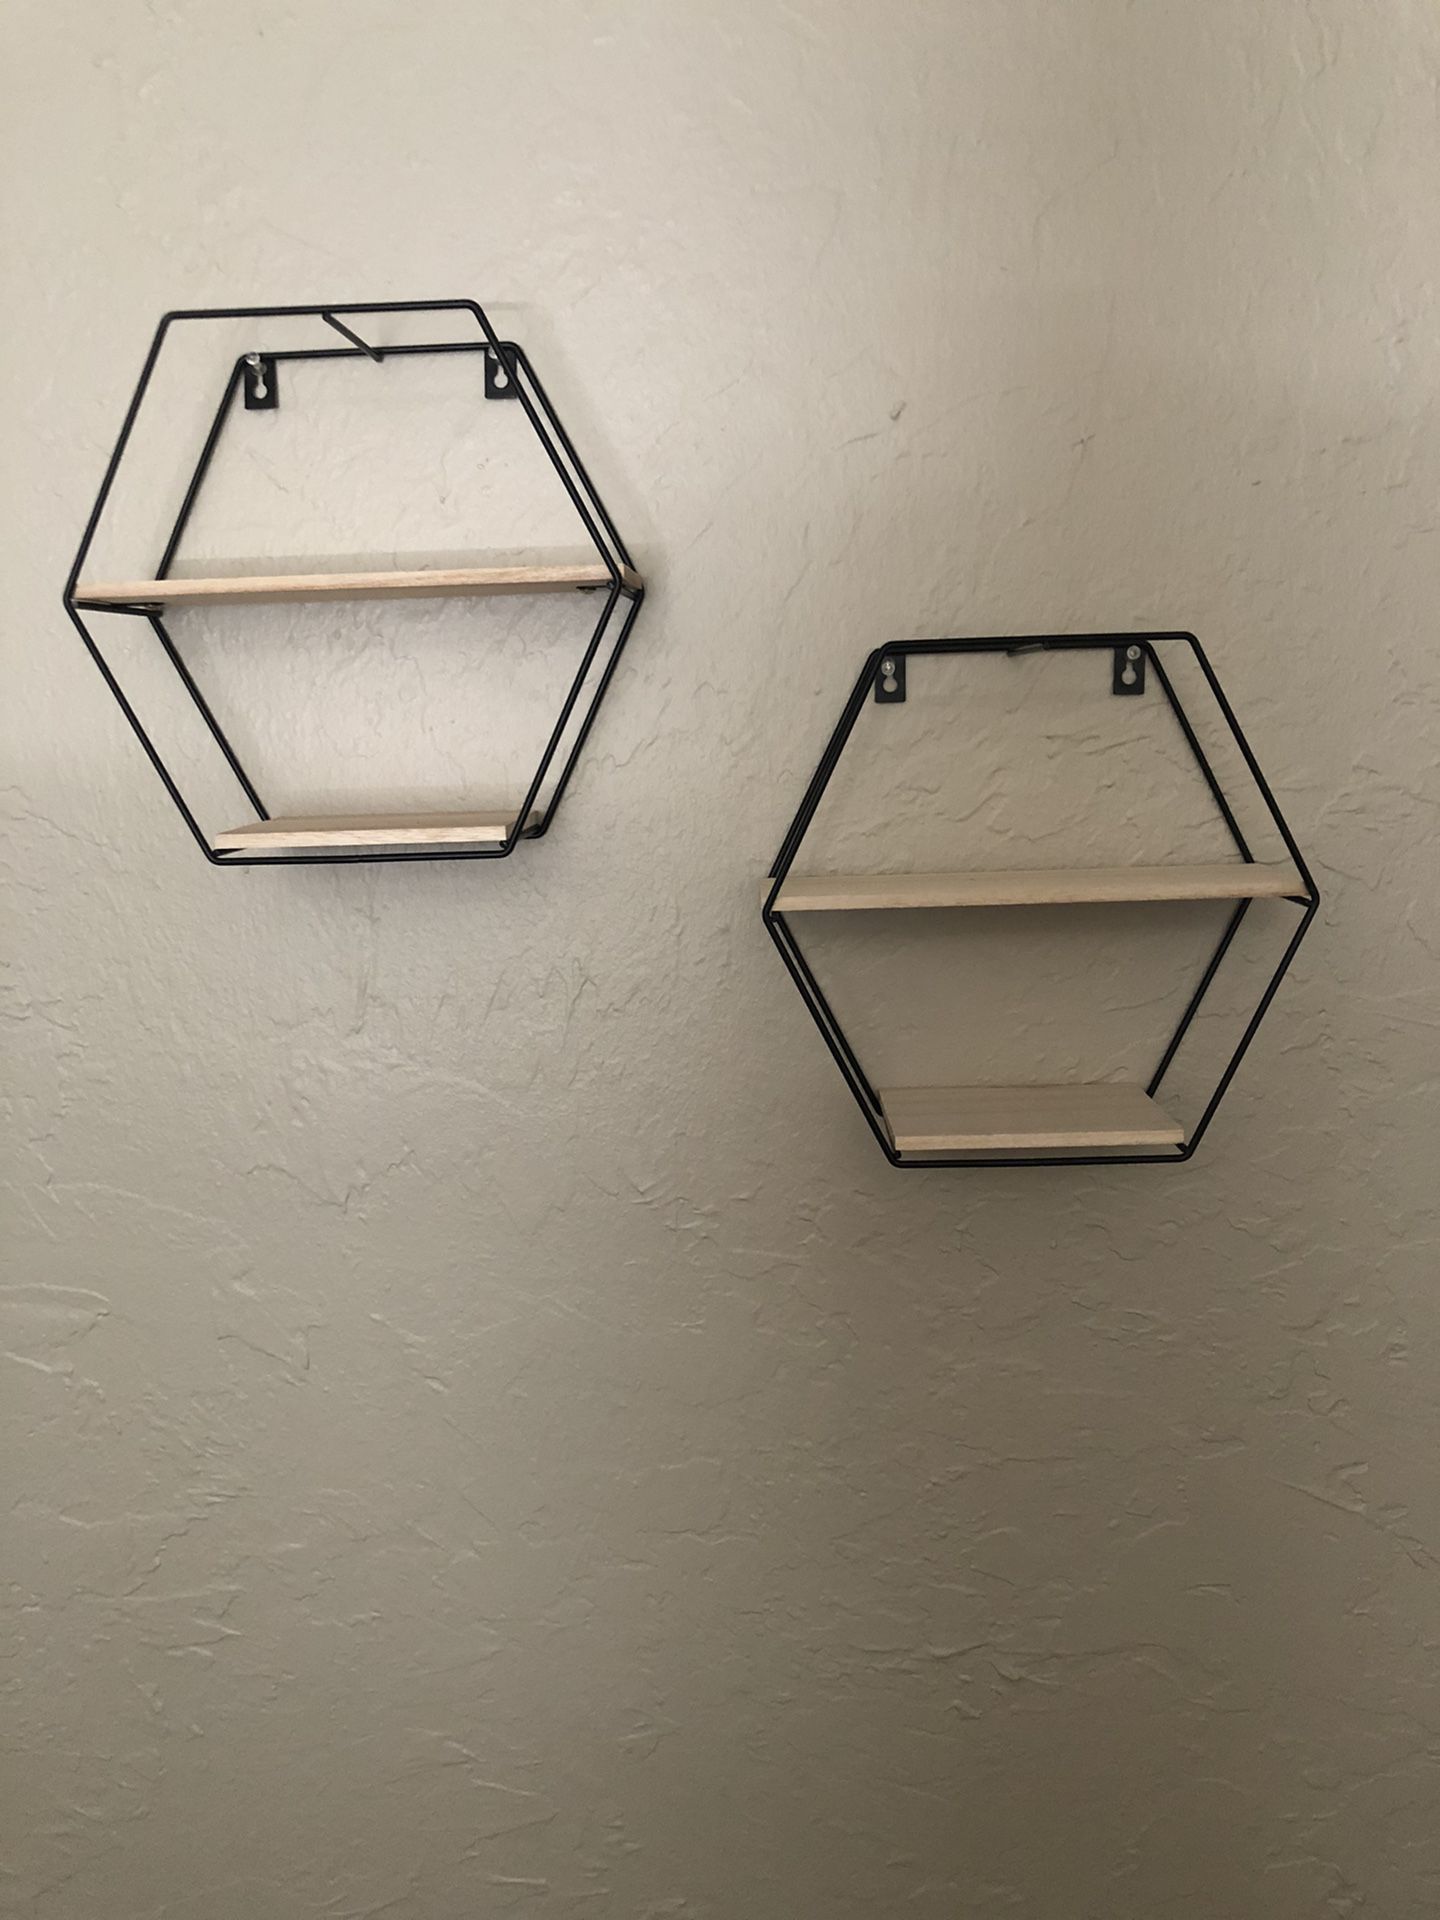 Hexagonal shelves